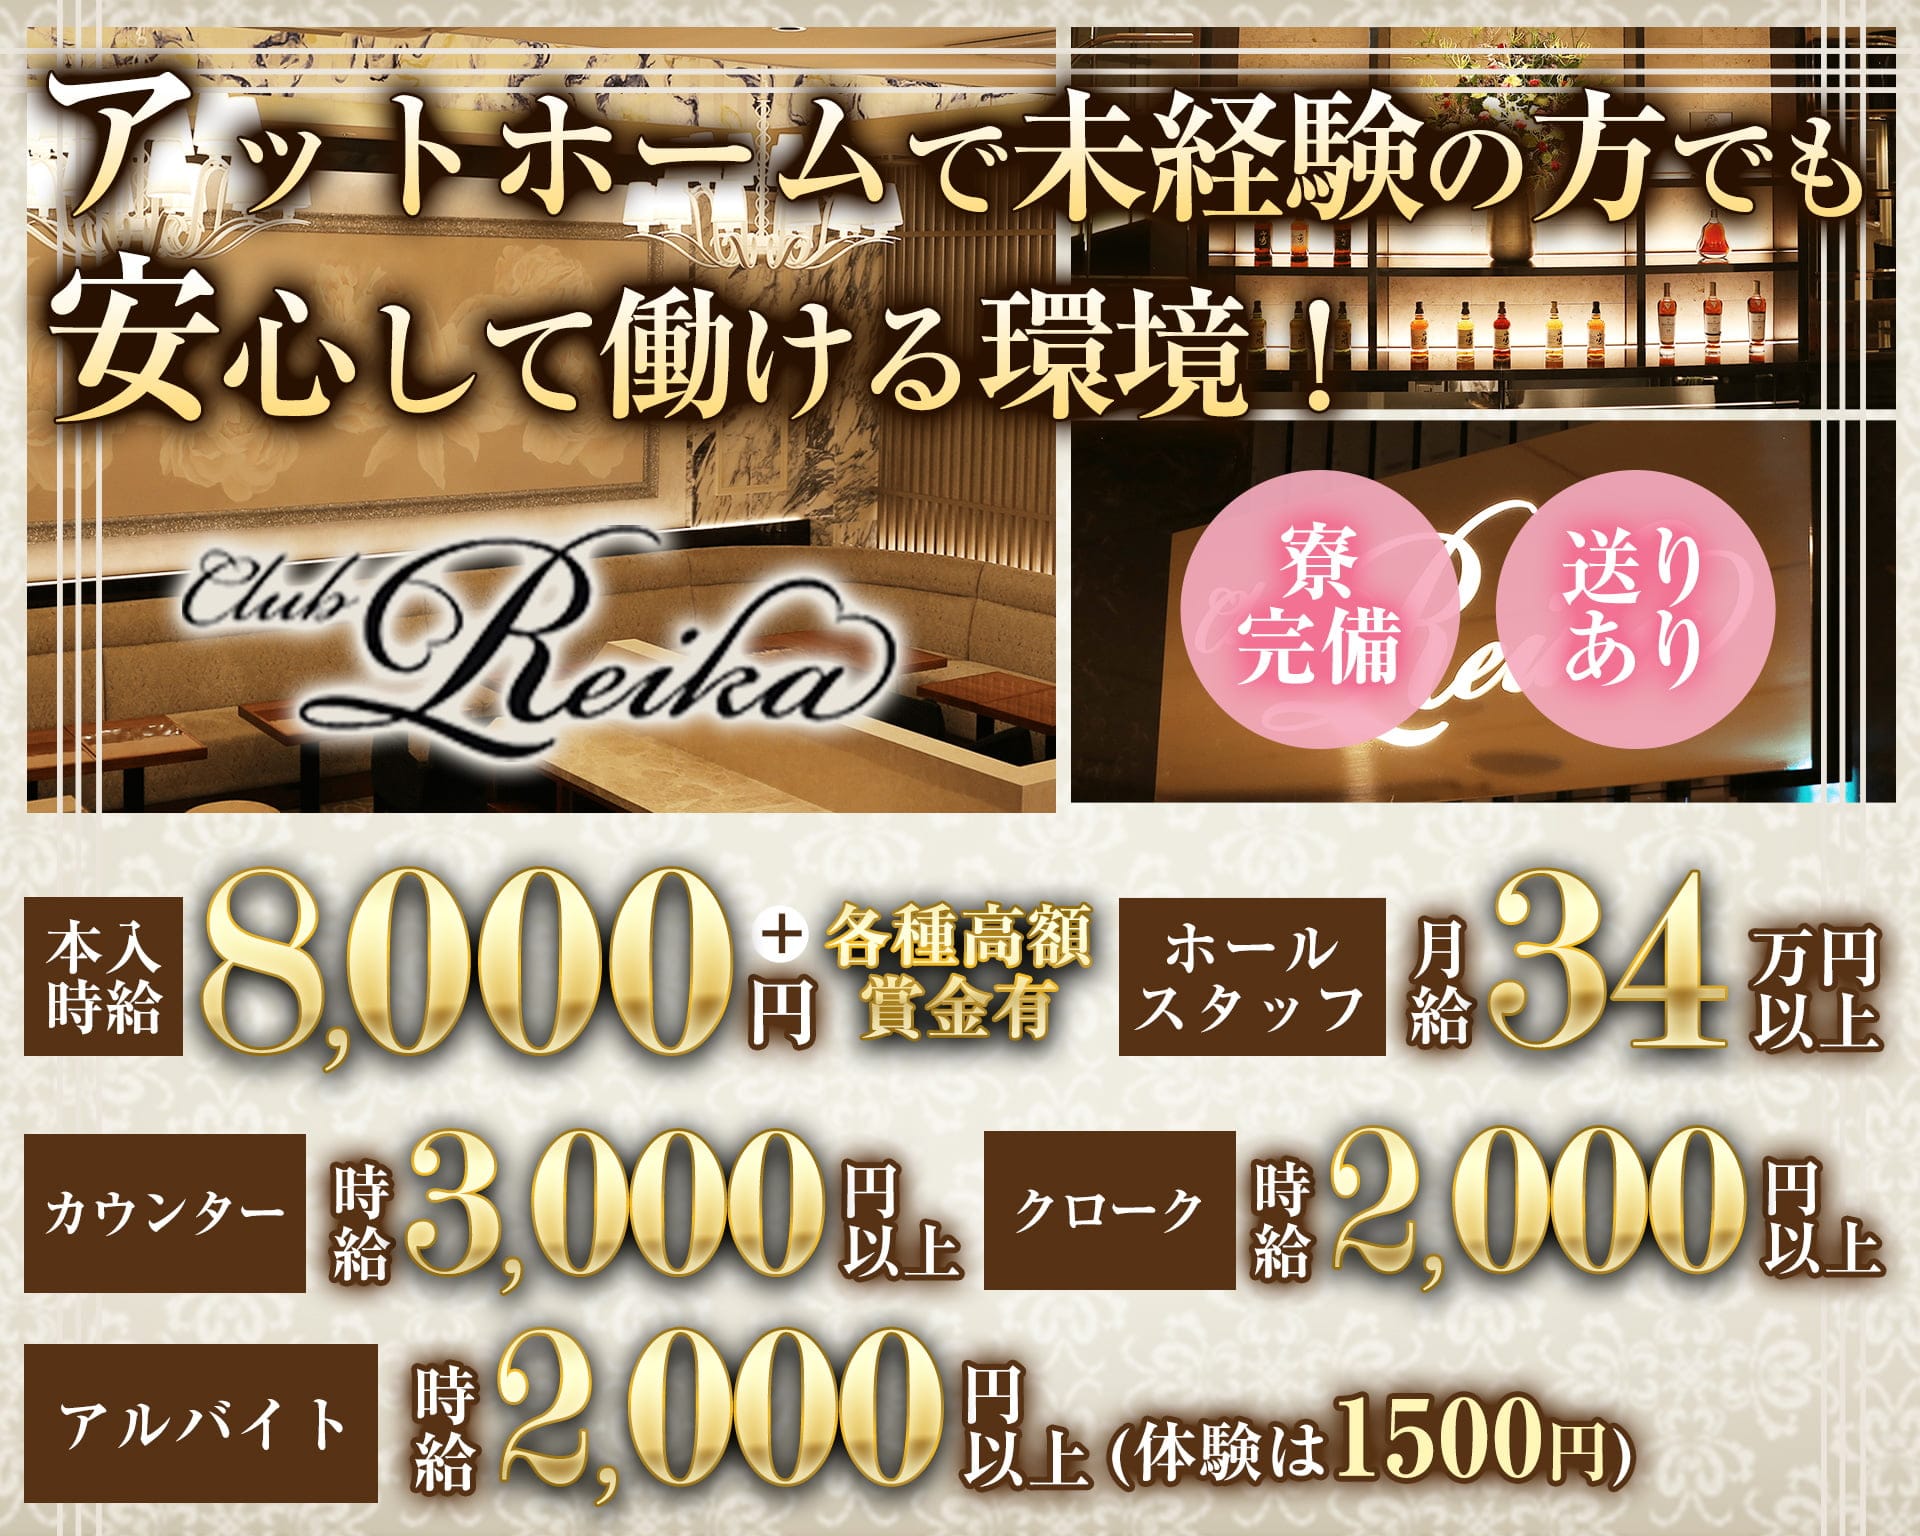 Club Reika（レイカ）【公式体入・求人情報】 銀座クラブ TOP画像